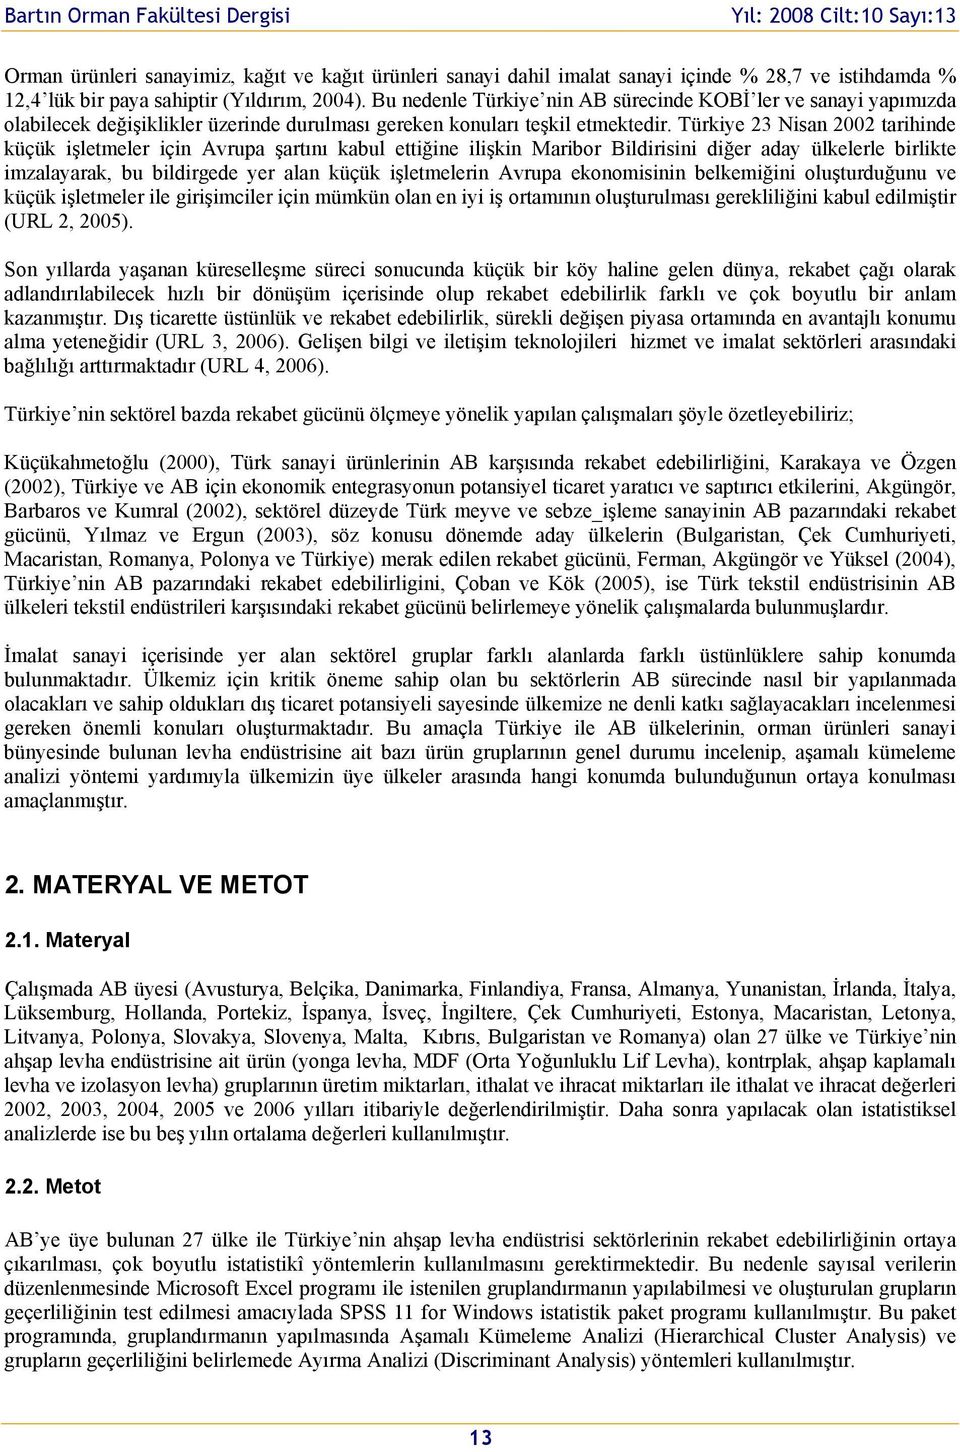 Türkiye 23 Nisan 2002 tarihinde küçük işletmeler için Avrupa şartını kabul ettiğine ilişkin Maribor Bildirisini diğer aday ülkelerle birlikte imzalayarak, bu bildirgede yer alan küçük işletmelerin